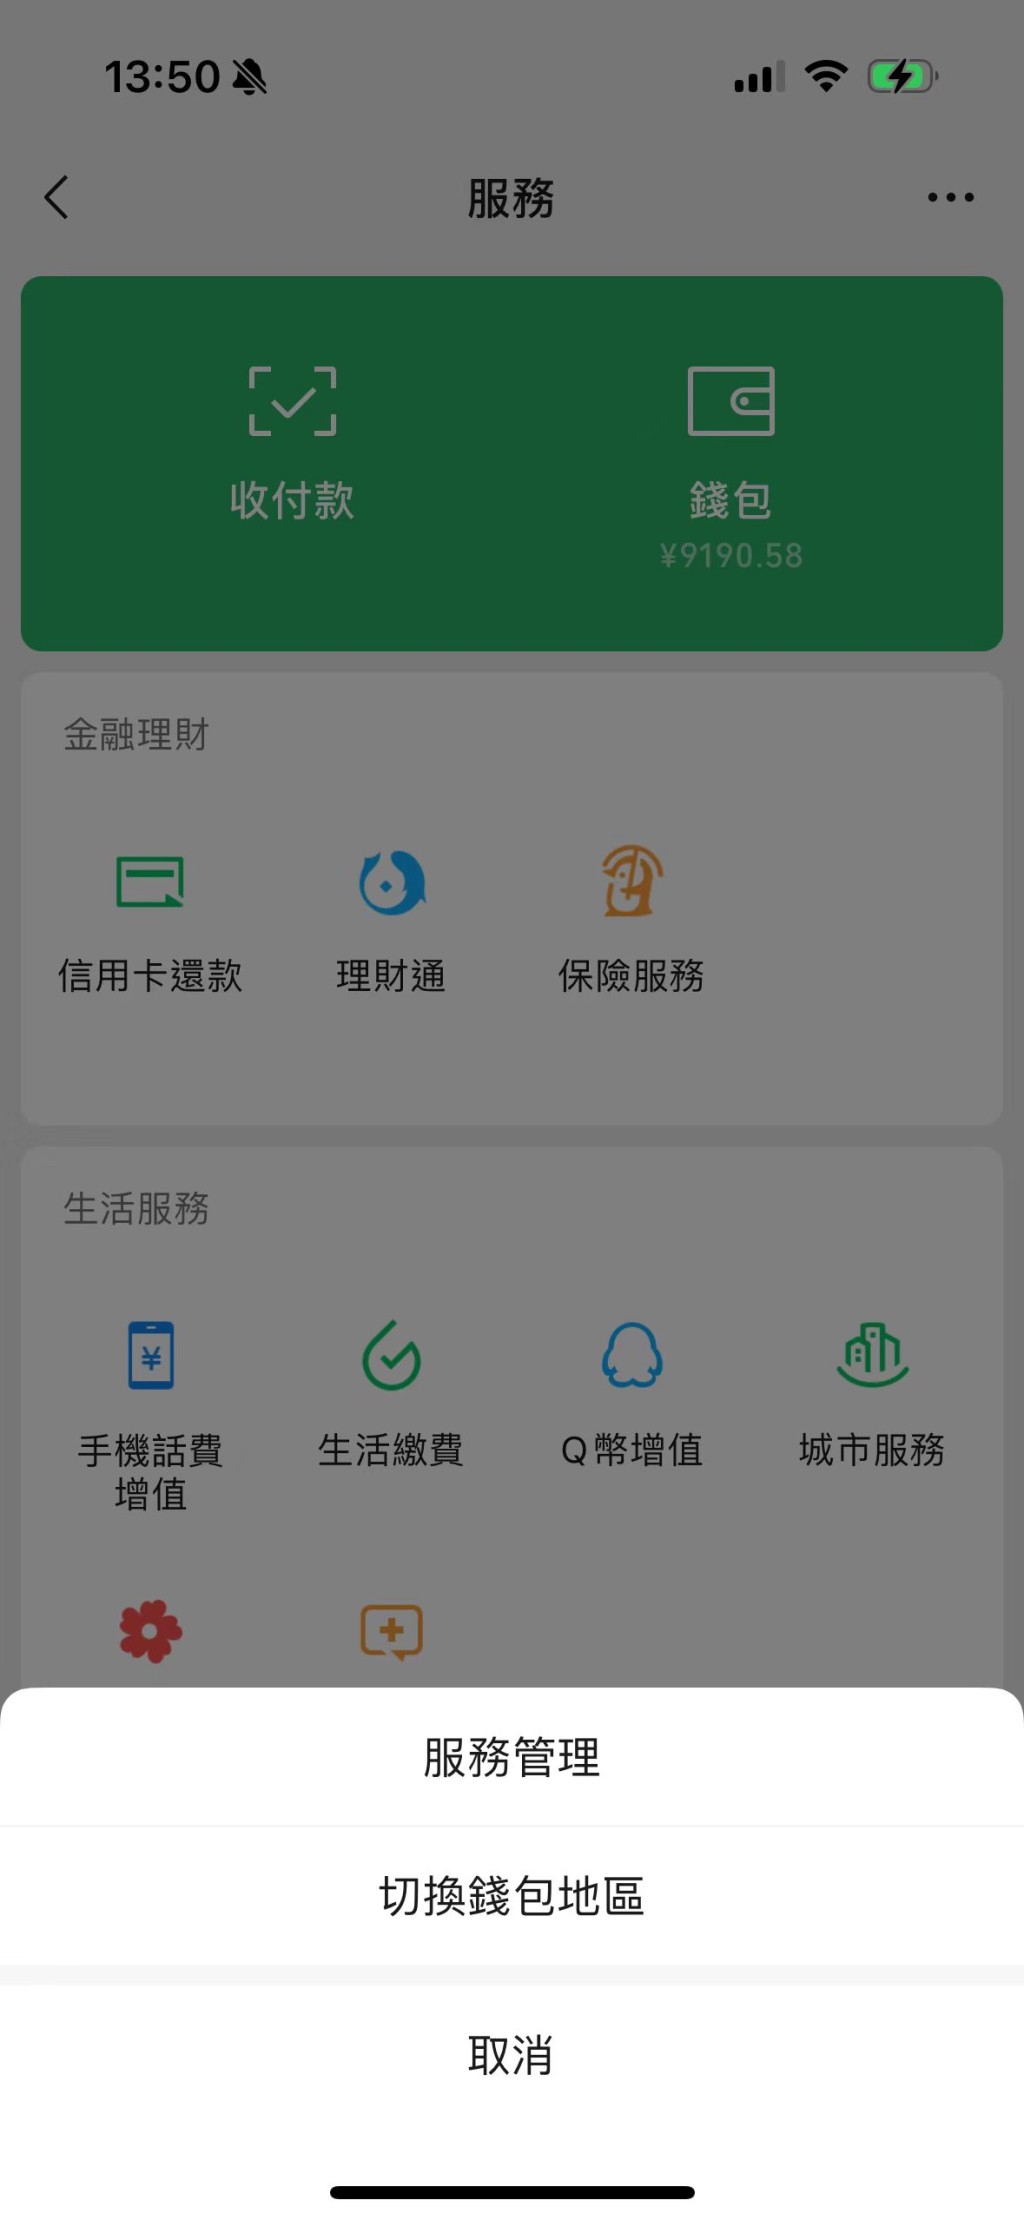 由微信支付切換錢包地區至WeChat Pay HK